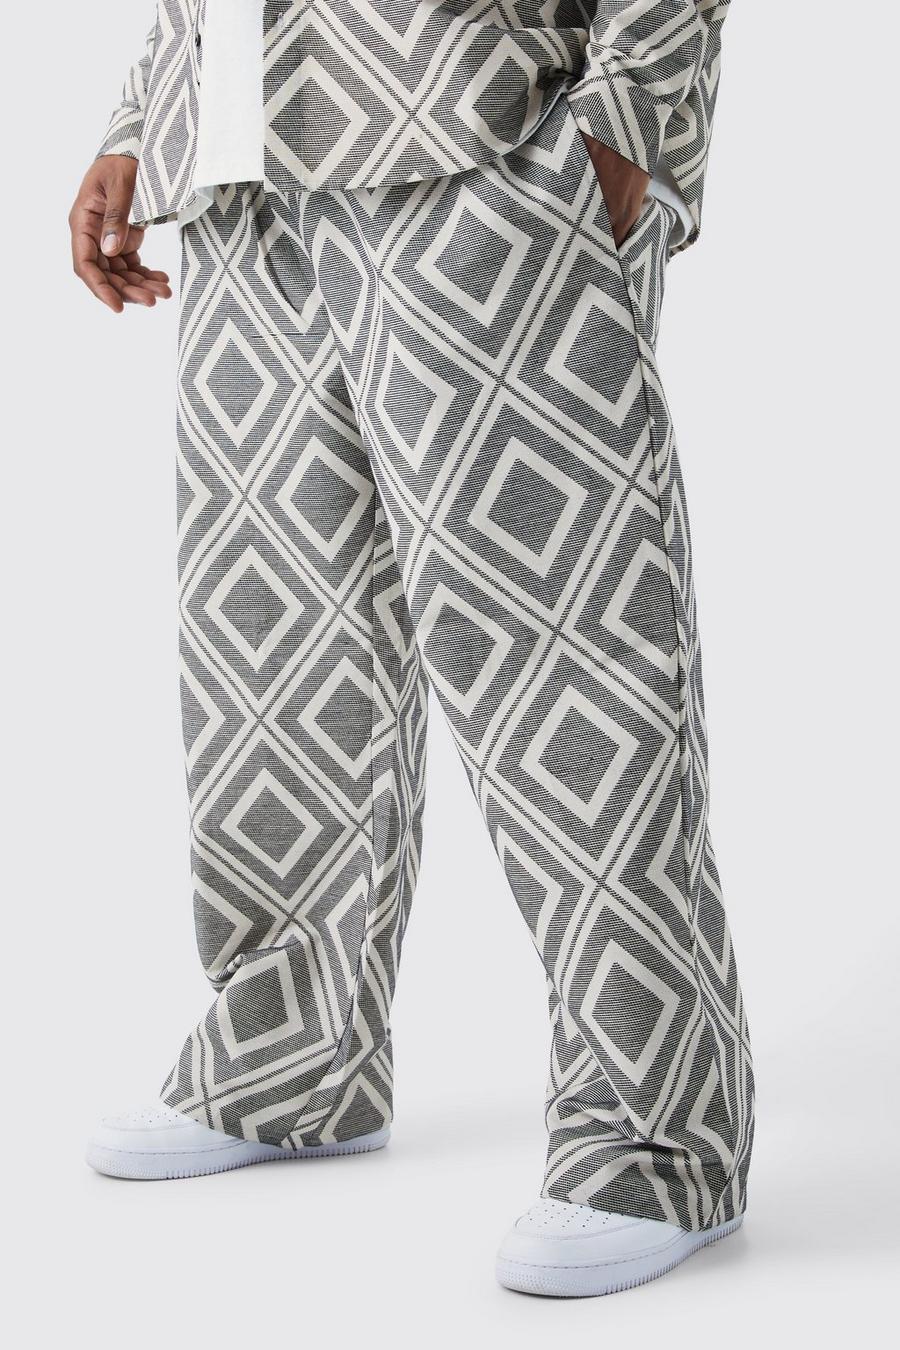 Pantaloni Plus Size rilassati in jacquard con fascia in vita elasticizzata, Grey grigio